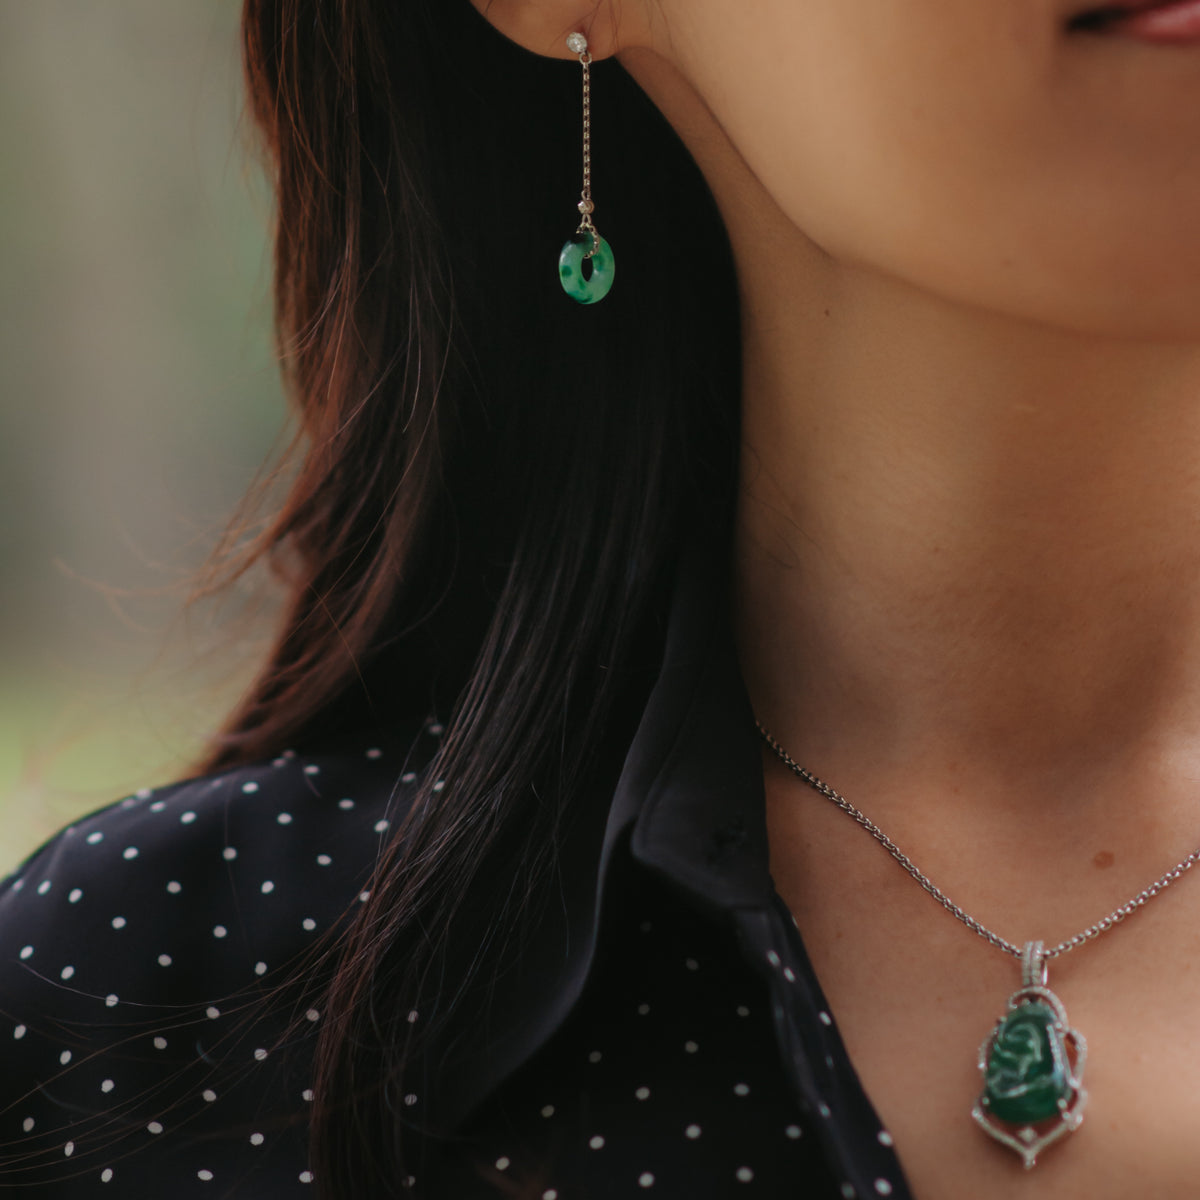 Wearing multiple jade jewelry in a park